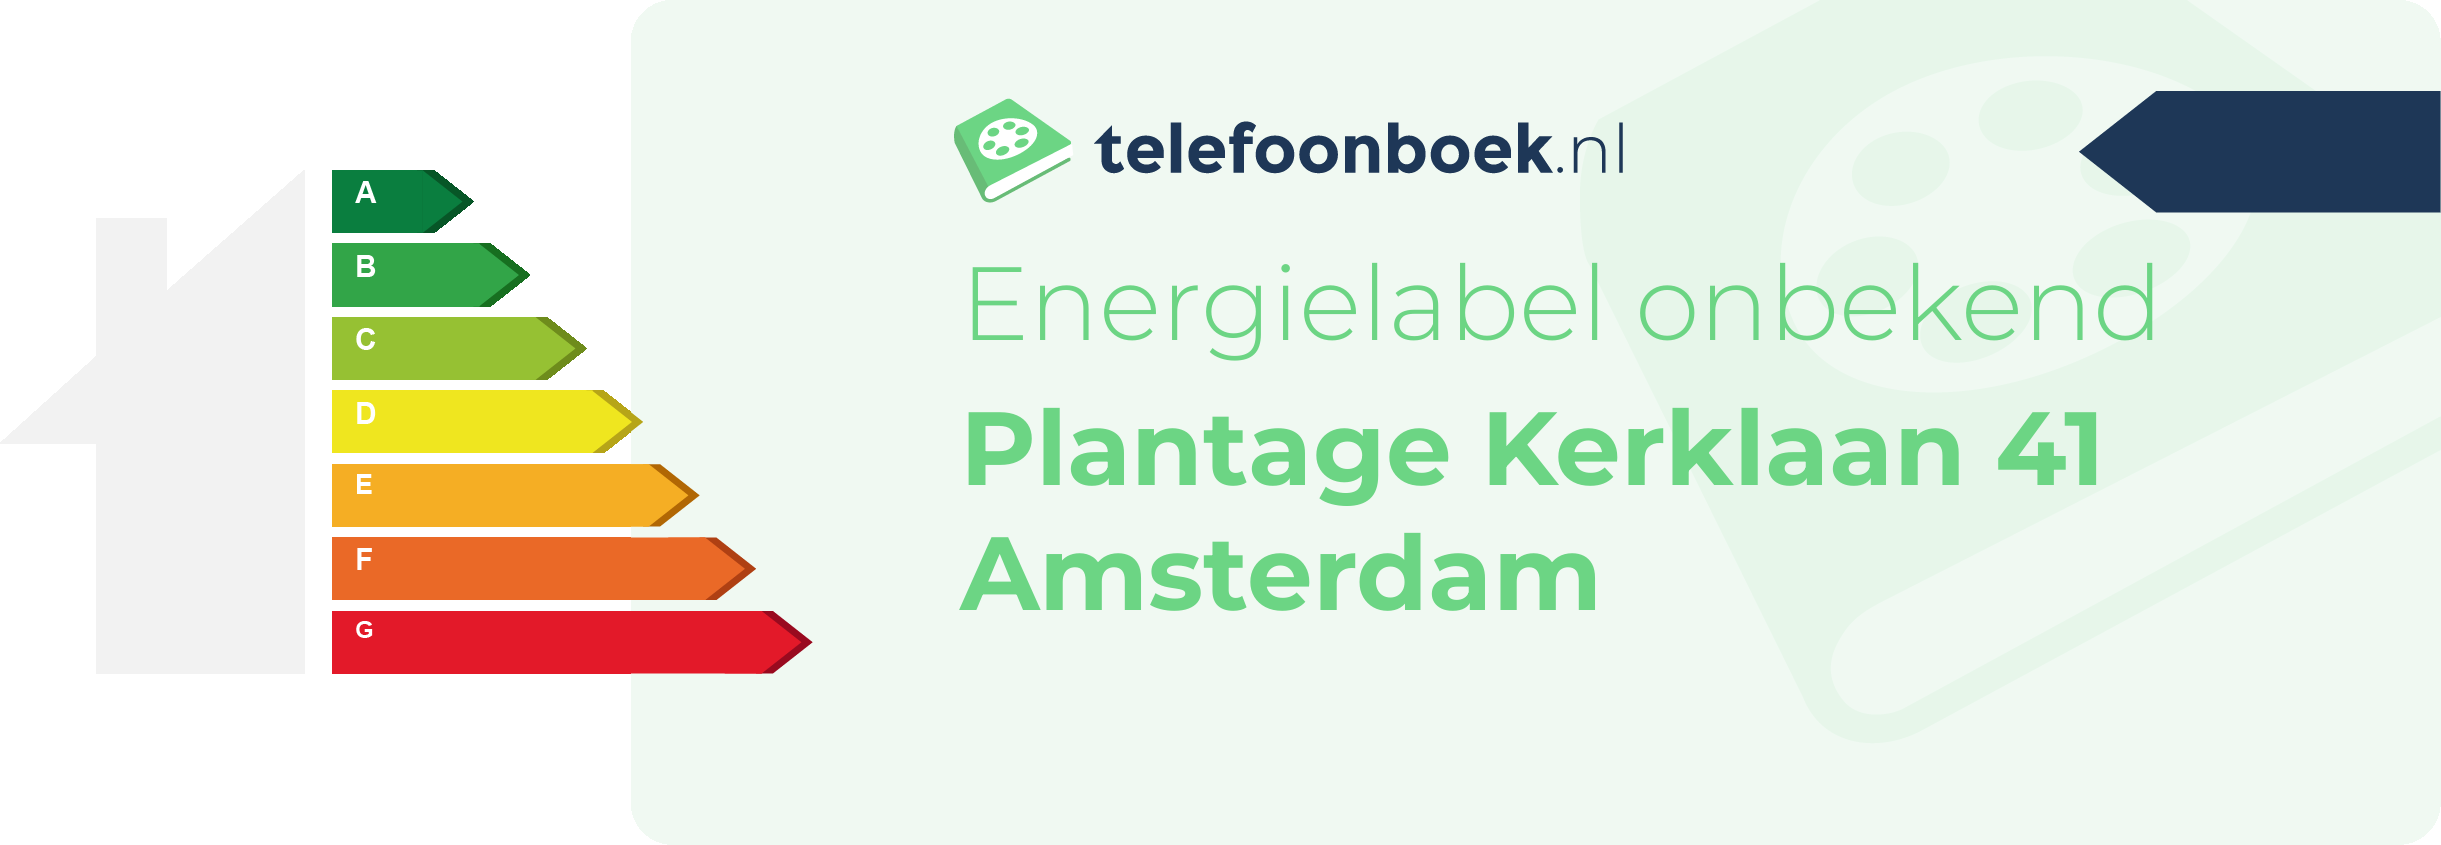 Energielabel Plantage Kerklaan 41 Amsterdam